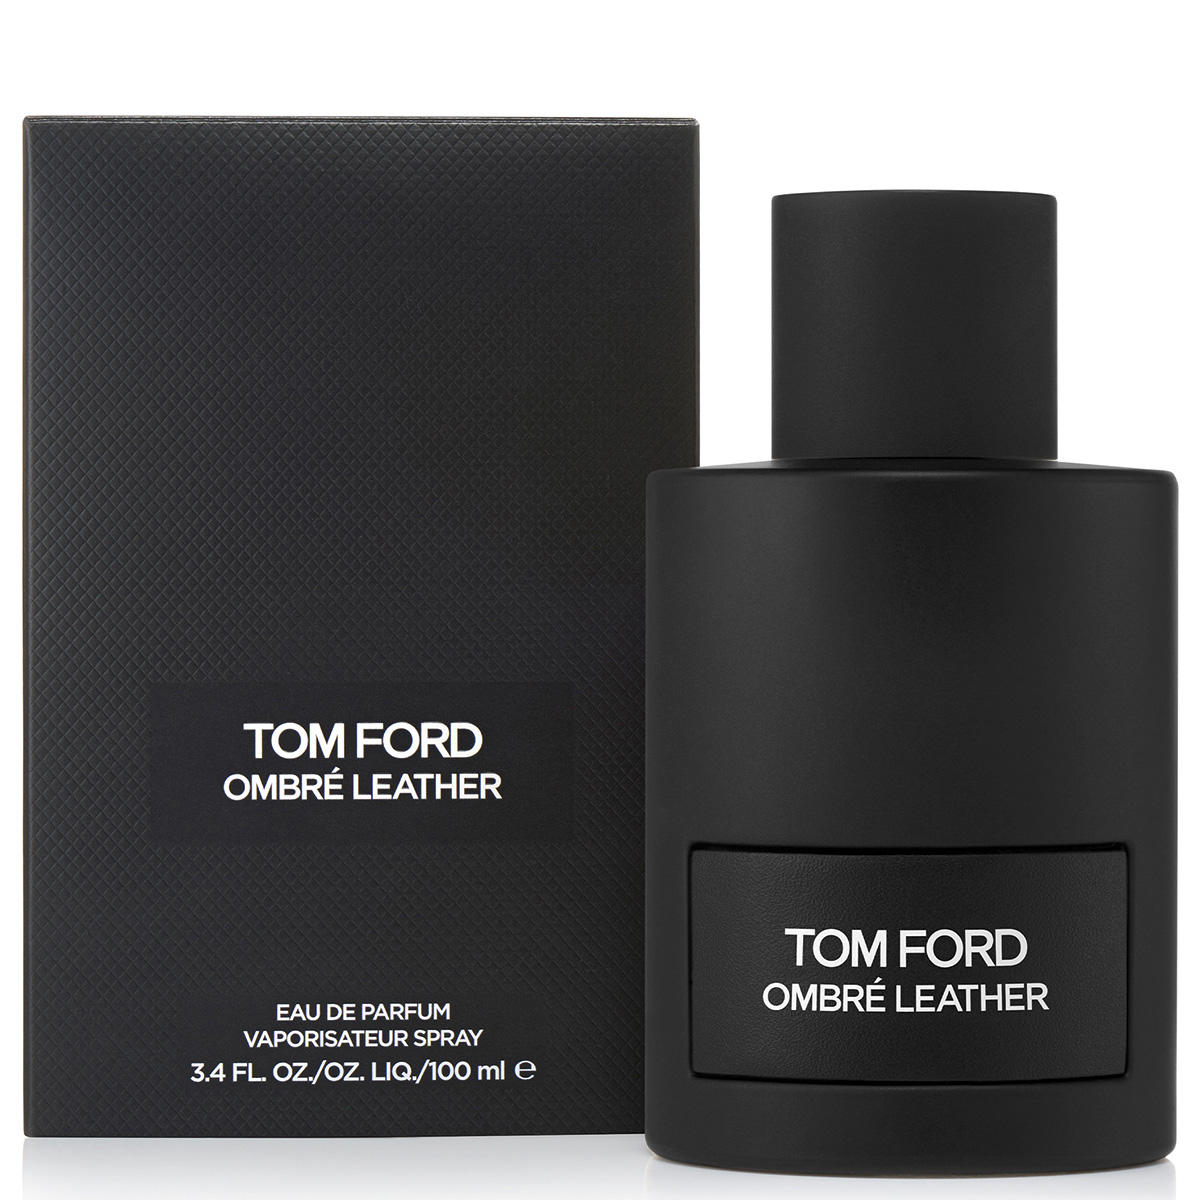 Tom Ford Ombré Leather Eau de Parfum 100 ml - 2